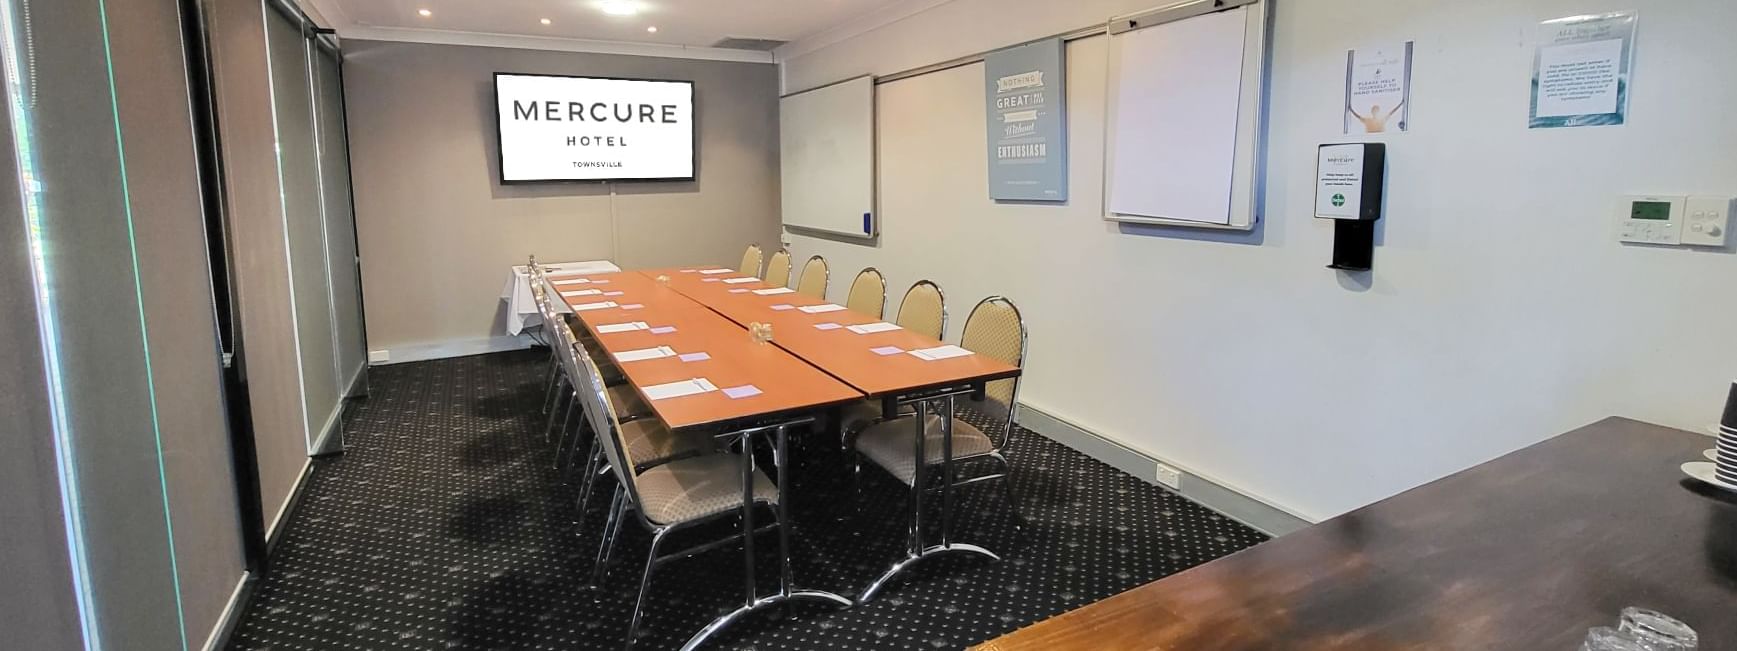 Mercure Townsville Boardroom